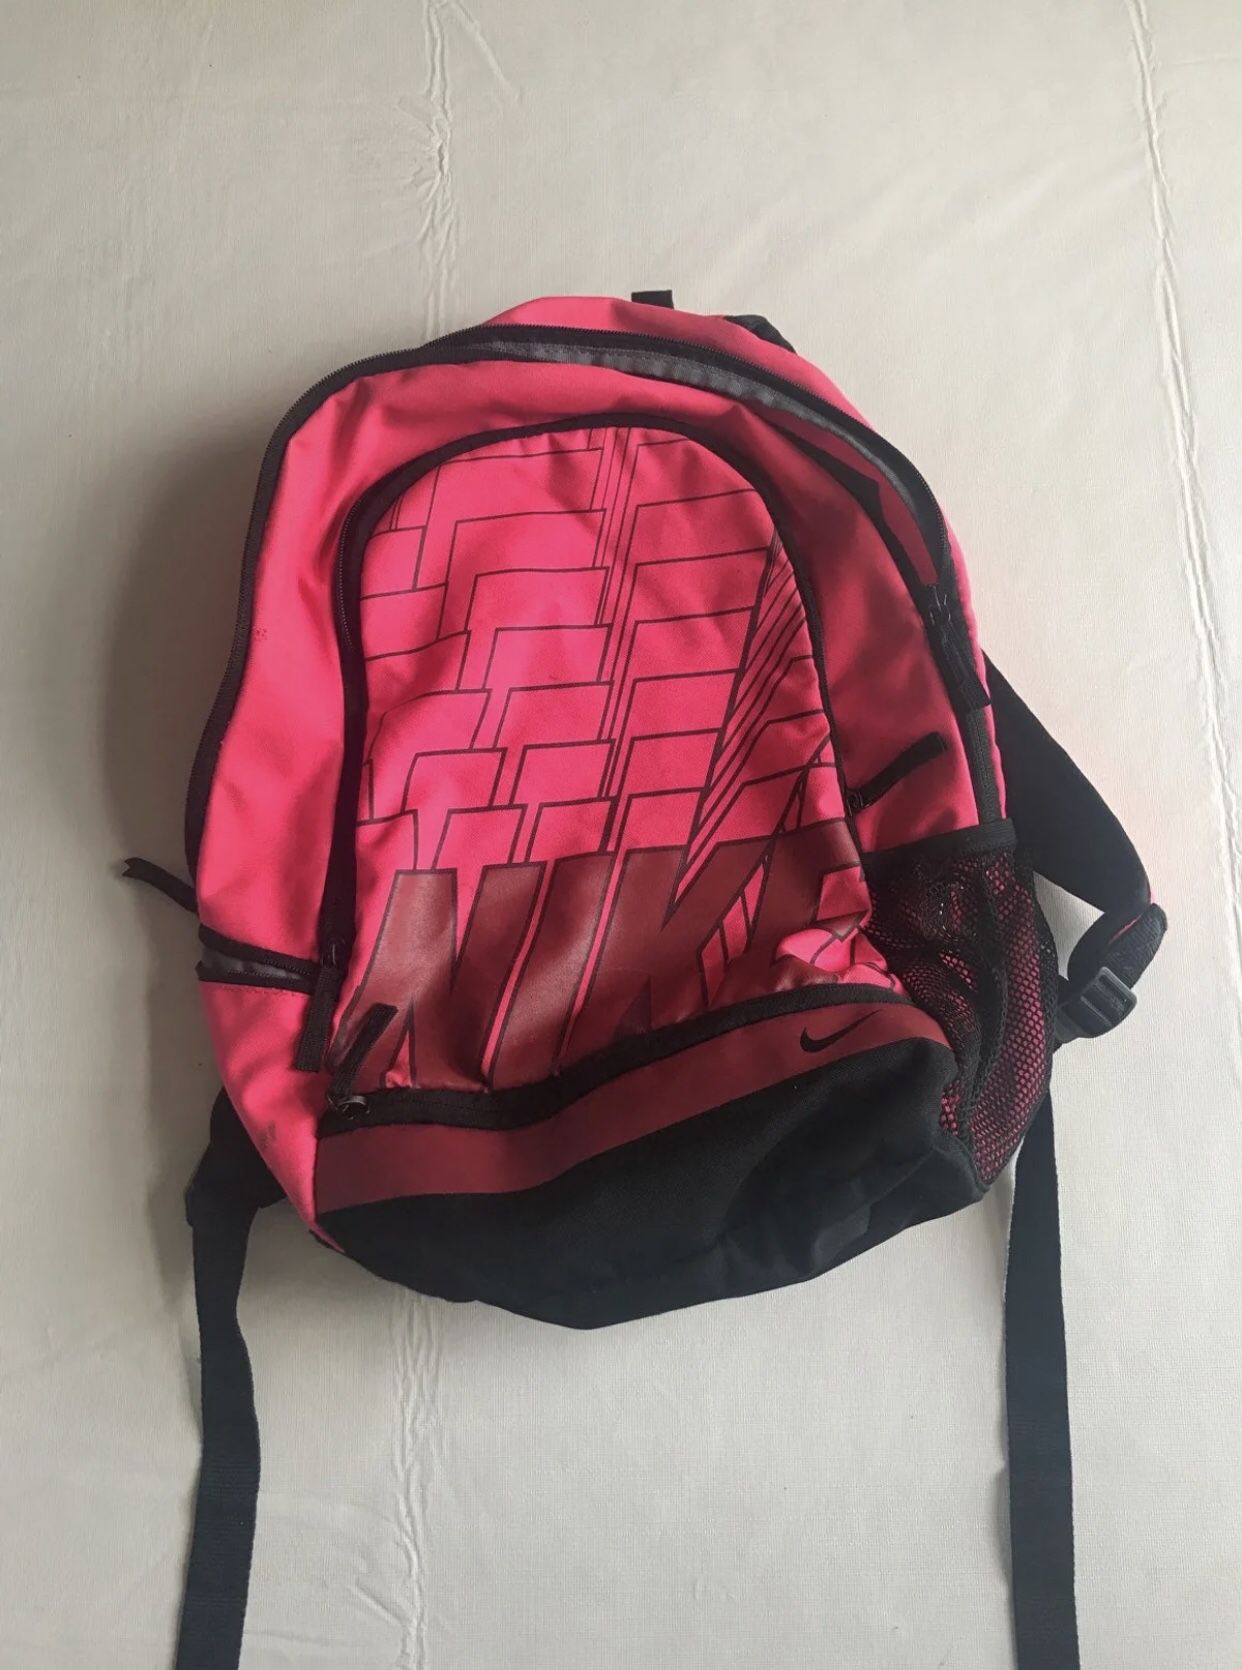 Nike pink backpack